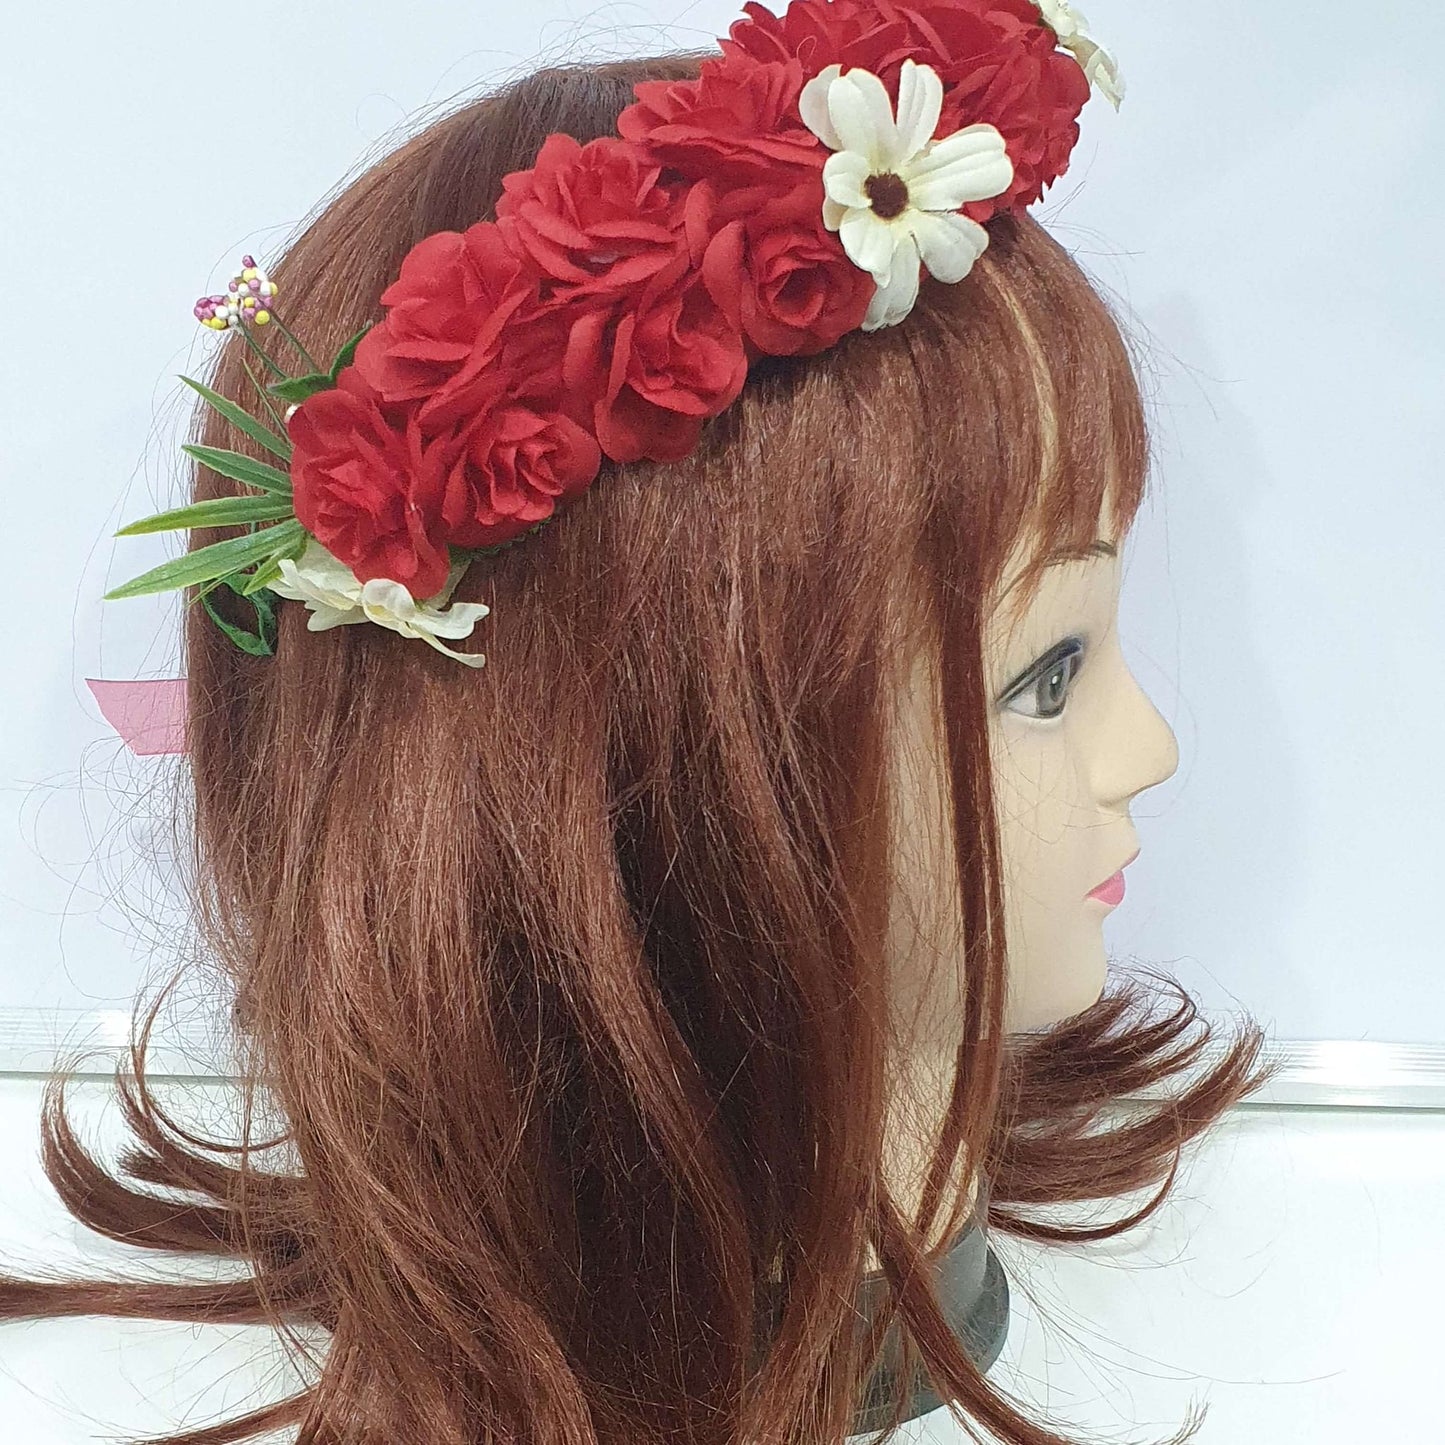 Red Floral Hair Crown